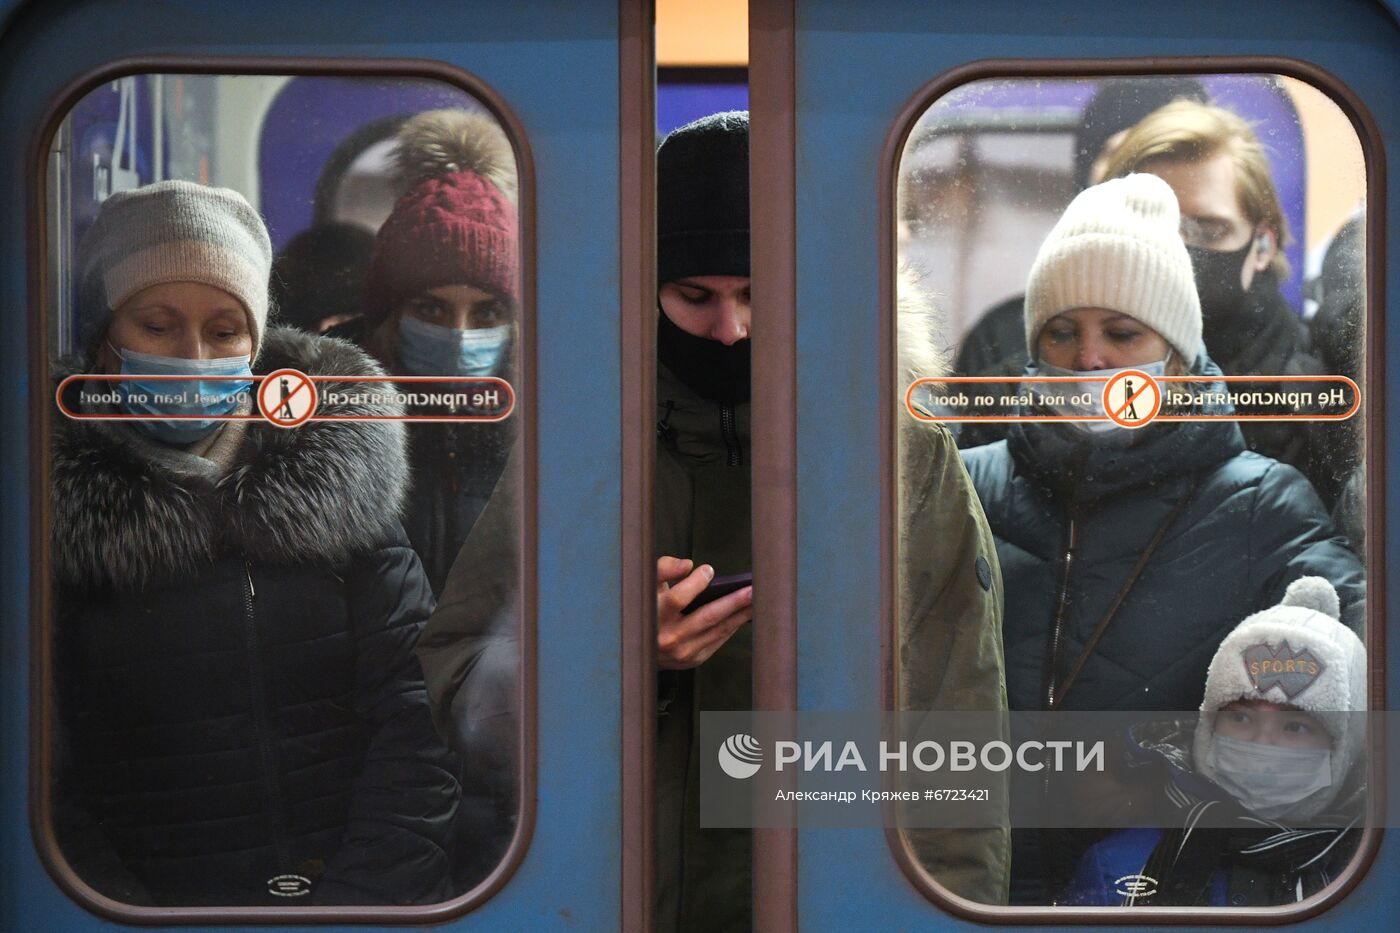 Рейд по соблюдению масочного режима в метро Новосибирска